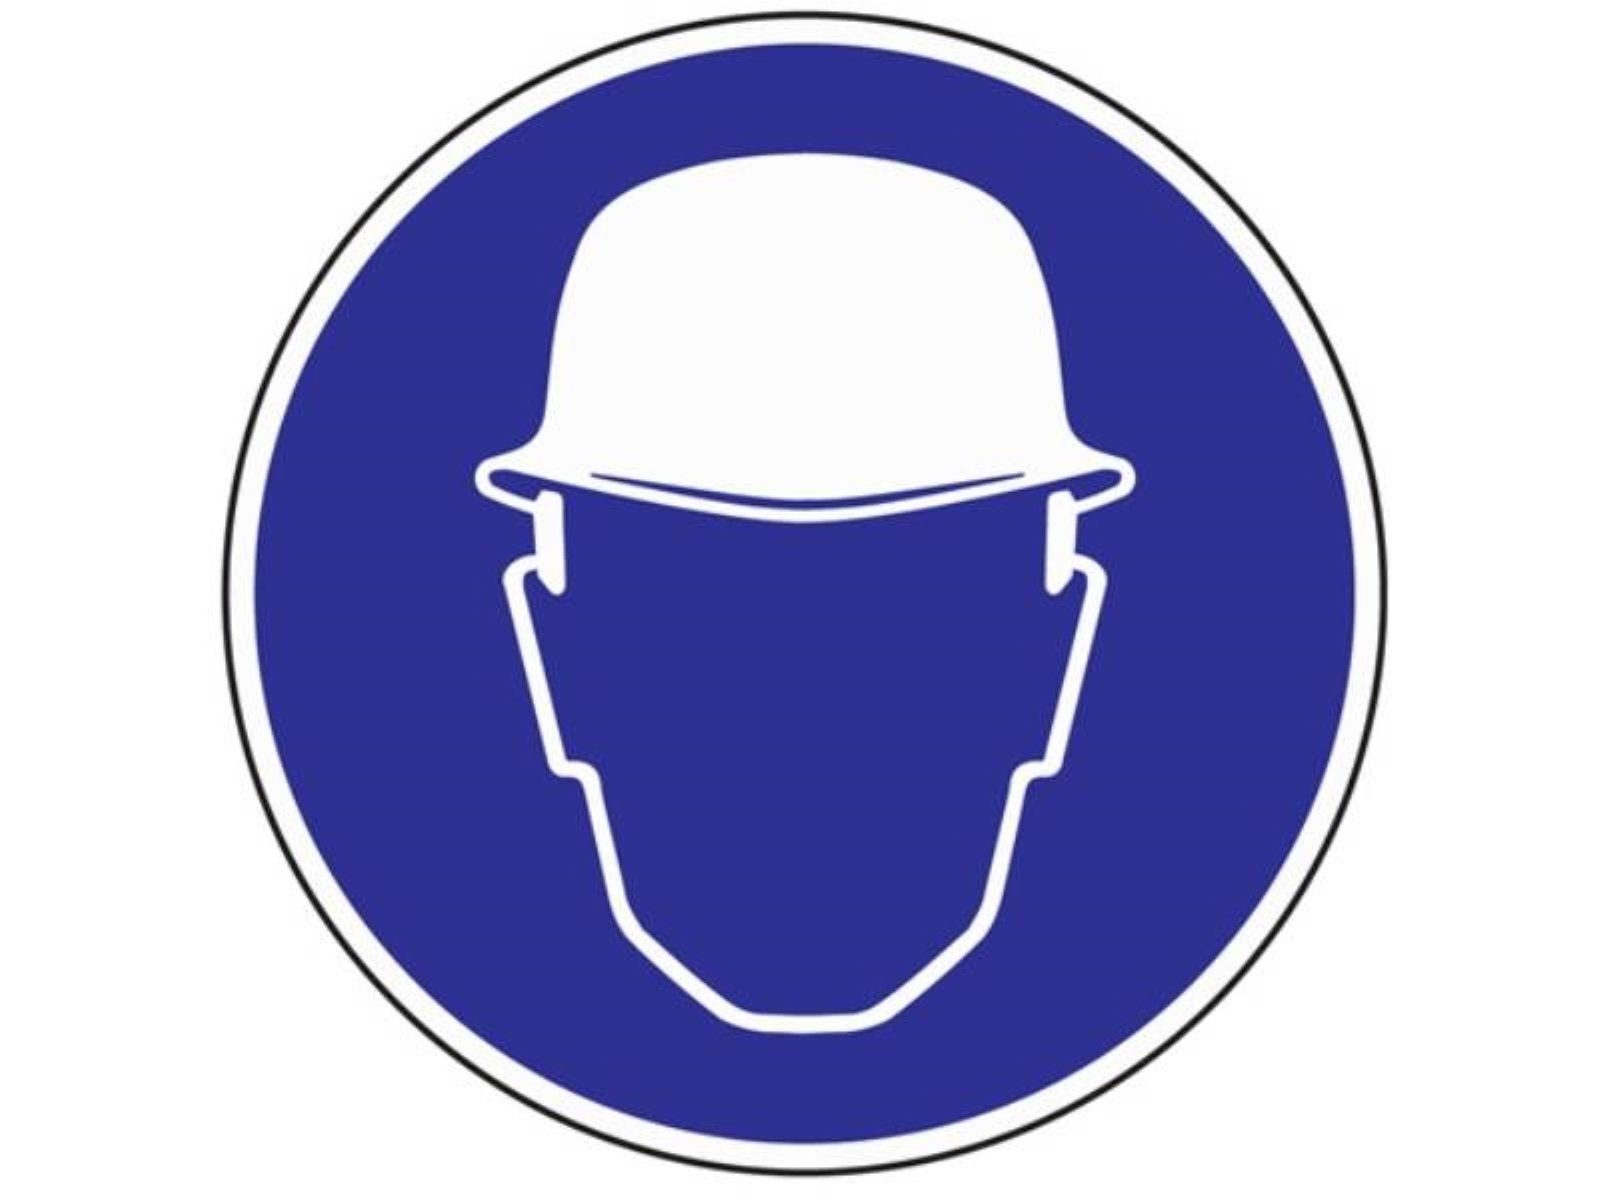 Folie Kopfschutz benutzen selbstklebend Kopfschutz blau/wei D.200mm PROMAT Gebotszeichen